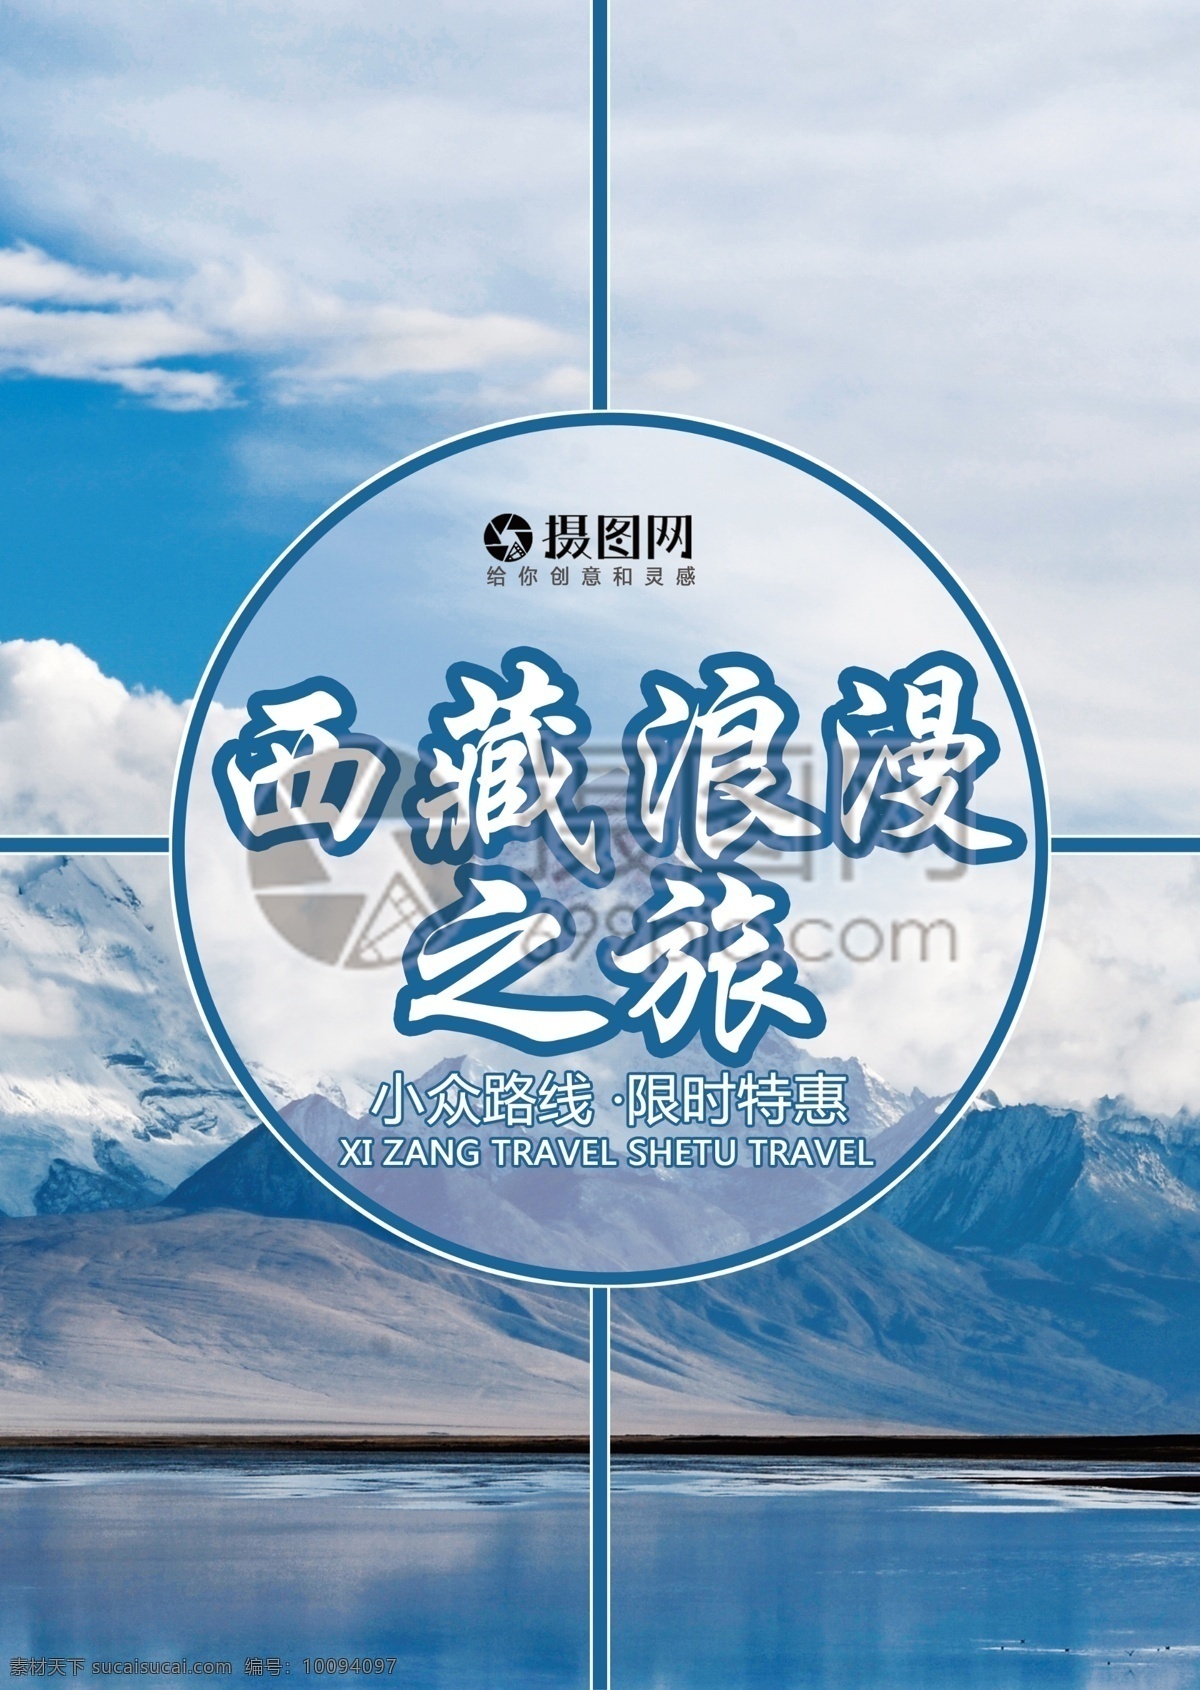 西藏旅游 宣传单 西藏 西部 蓝色 天空 雪山 布达拉宫 拉萨 林芝 旅游 度假 旅游宣传 宣传单设计 假期 游玩